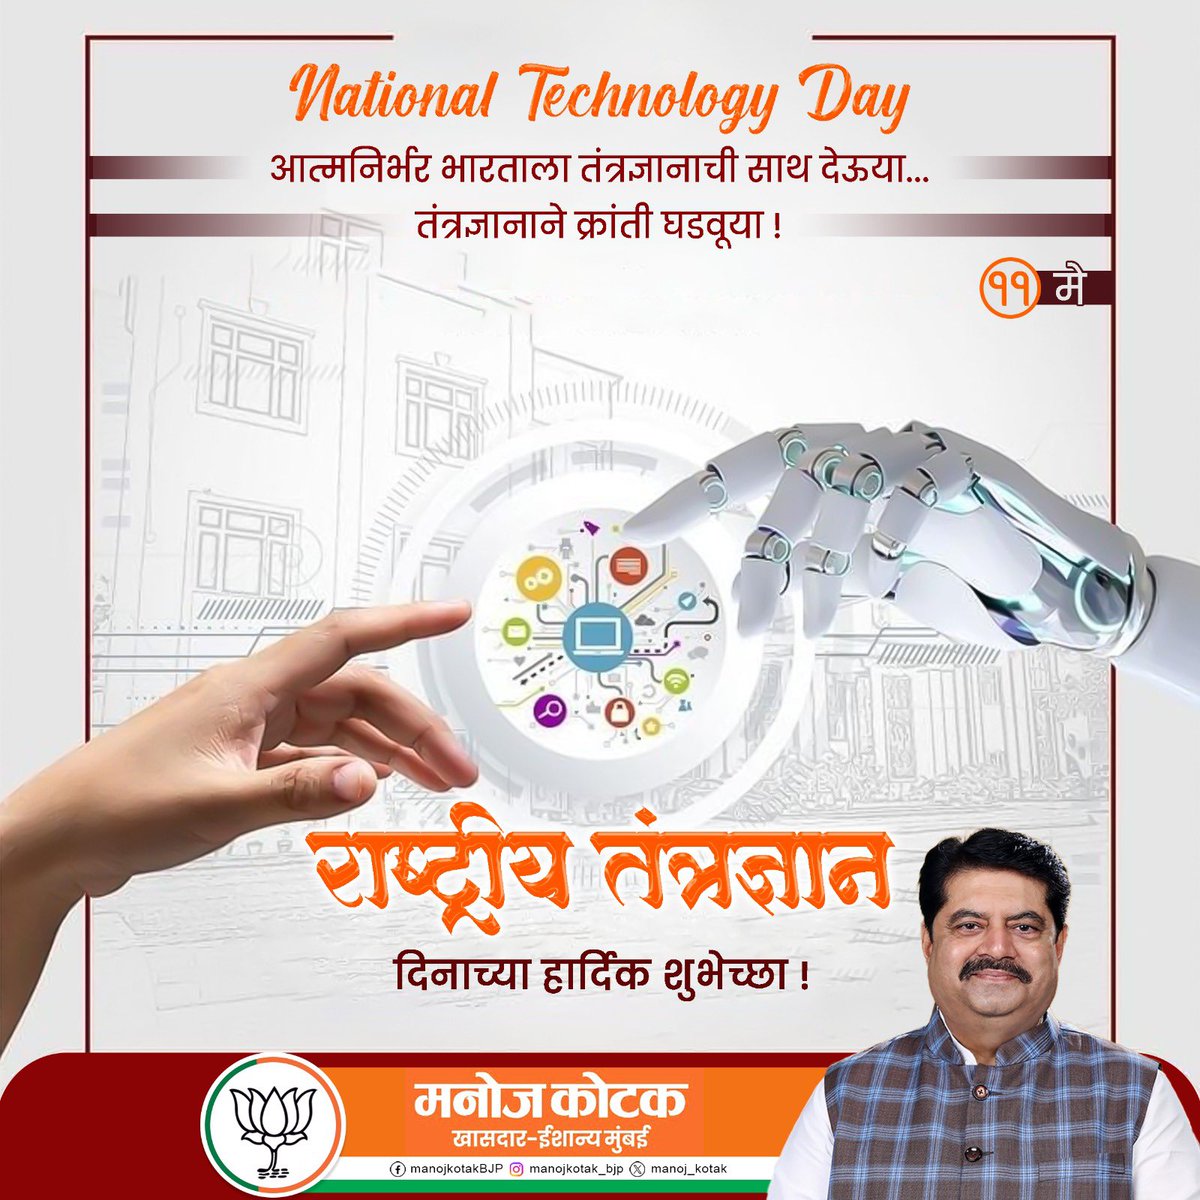 भारताच्या अणुशक्ती आणि तंत्रज्ञानाचे प्रतीक म्हणून साजरा केला जाणारा दिवस म्हणजे राष्ट्रीय तंत्रज्ञान दिन. राष्ट्रीय तंत्रज्ञान दिनाच्या सर्वांना हार्दिक शुभेच्छा !